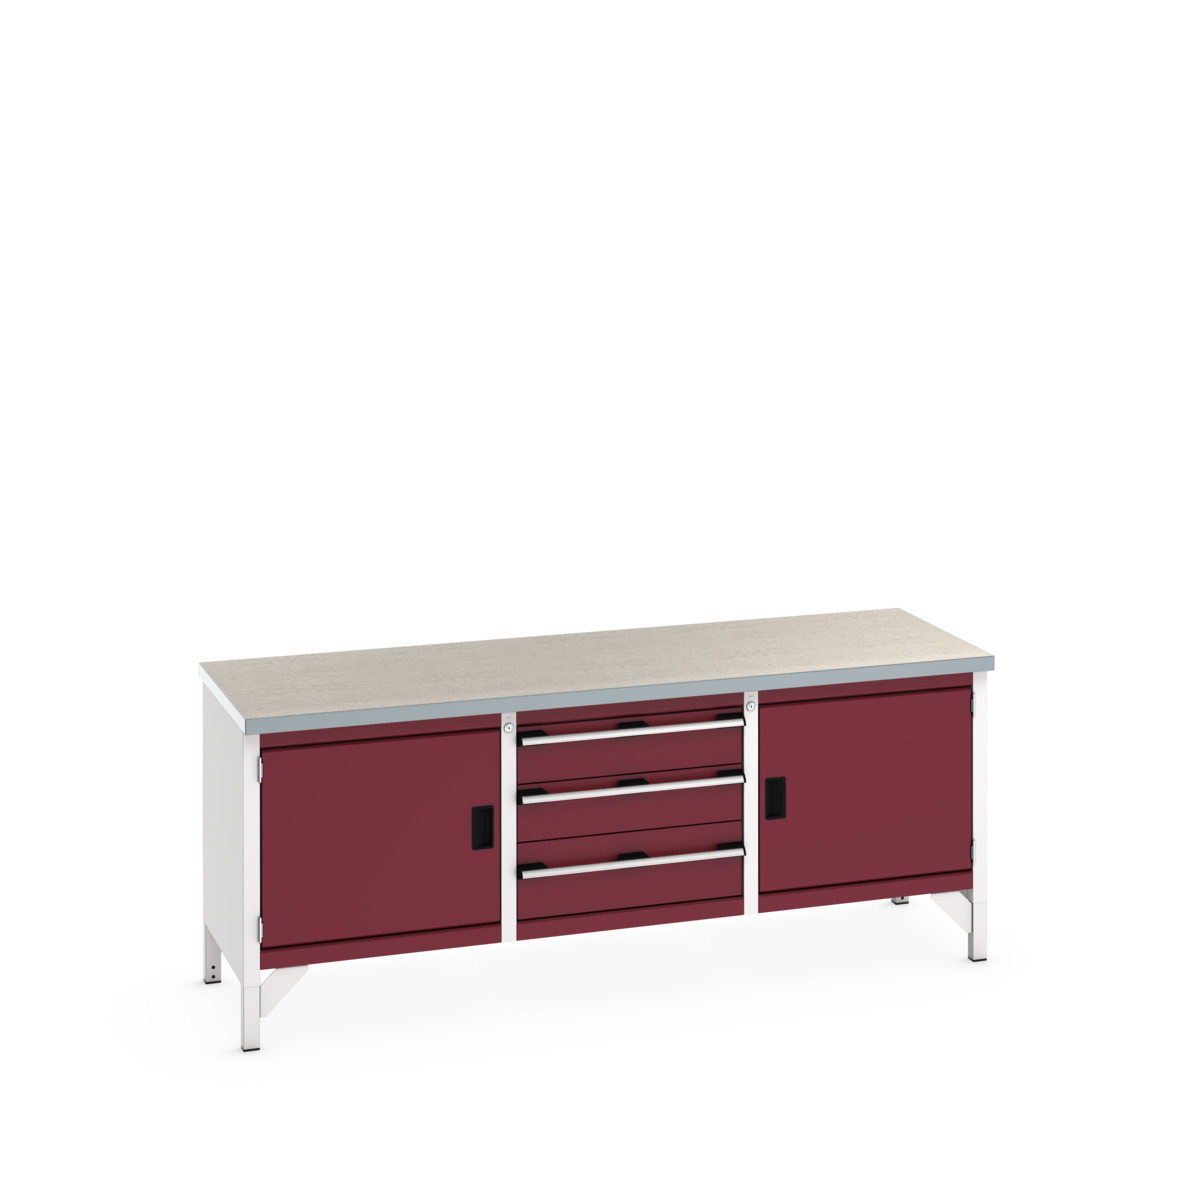 41002057.24V - cubio storage bench (lino)